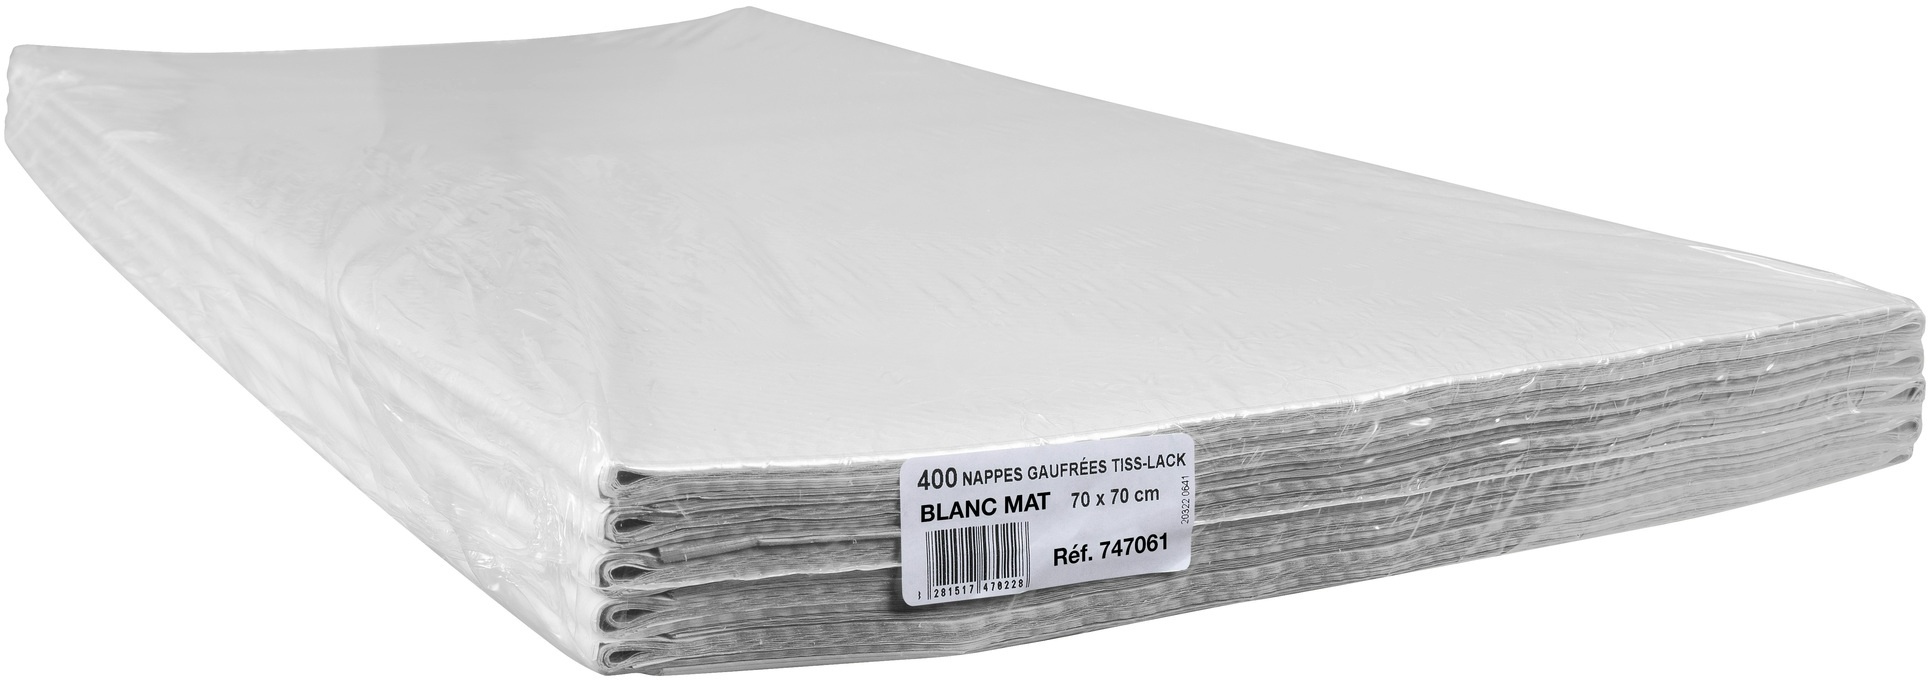 COGIR Packung mit 400 Papiertischdecken, auf Format gefaltet, in Folie eingeschweißt - Format 70x70cm - Weiß